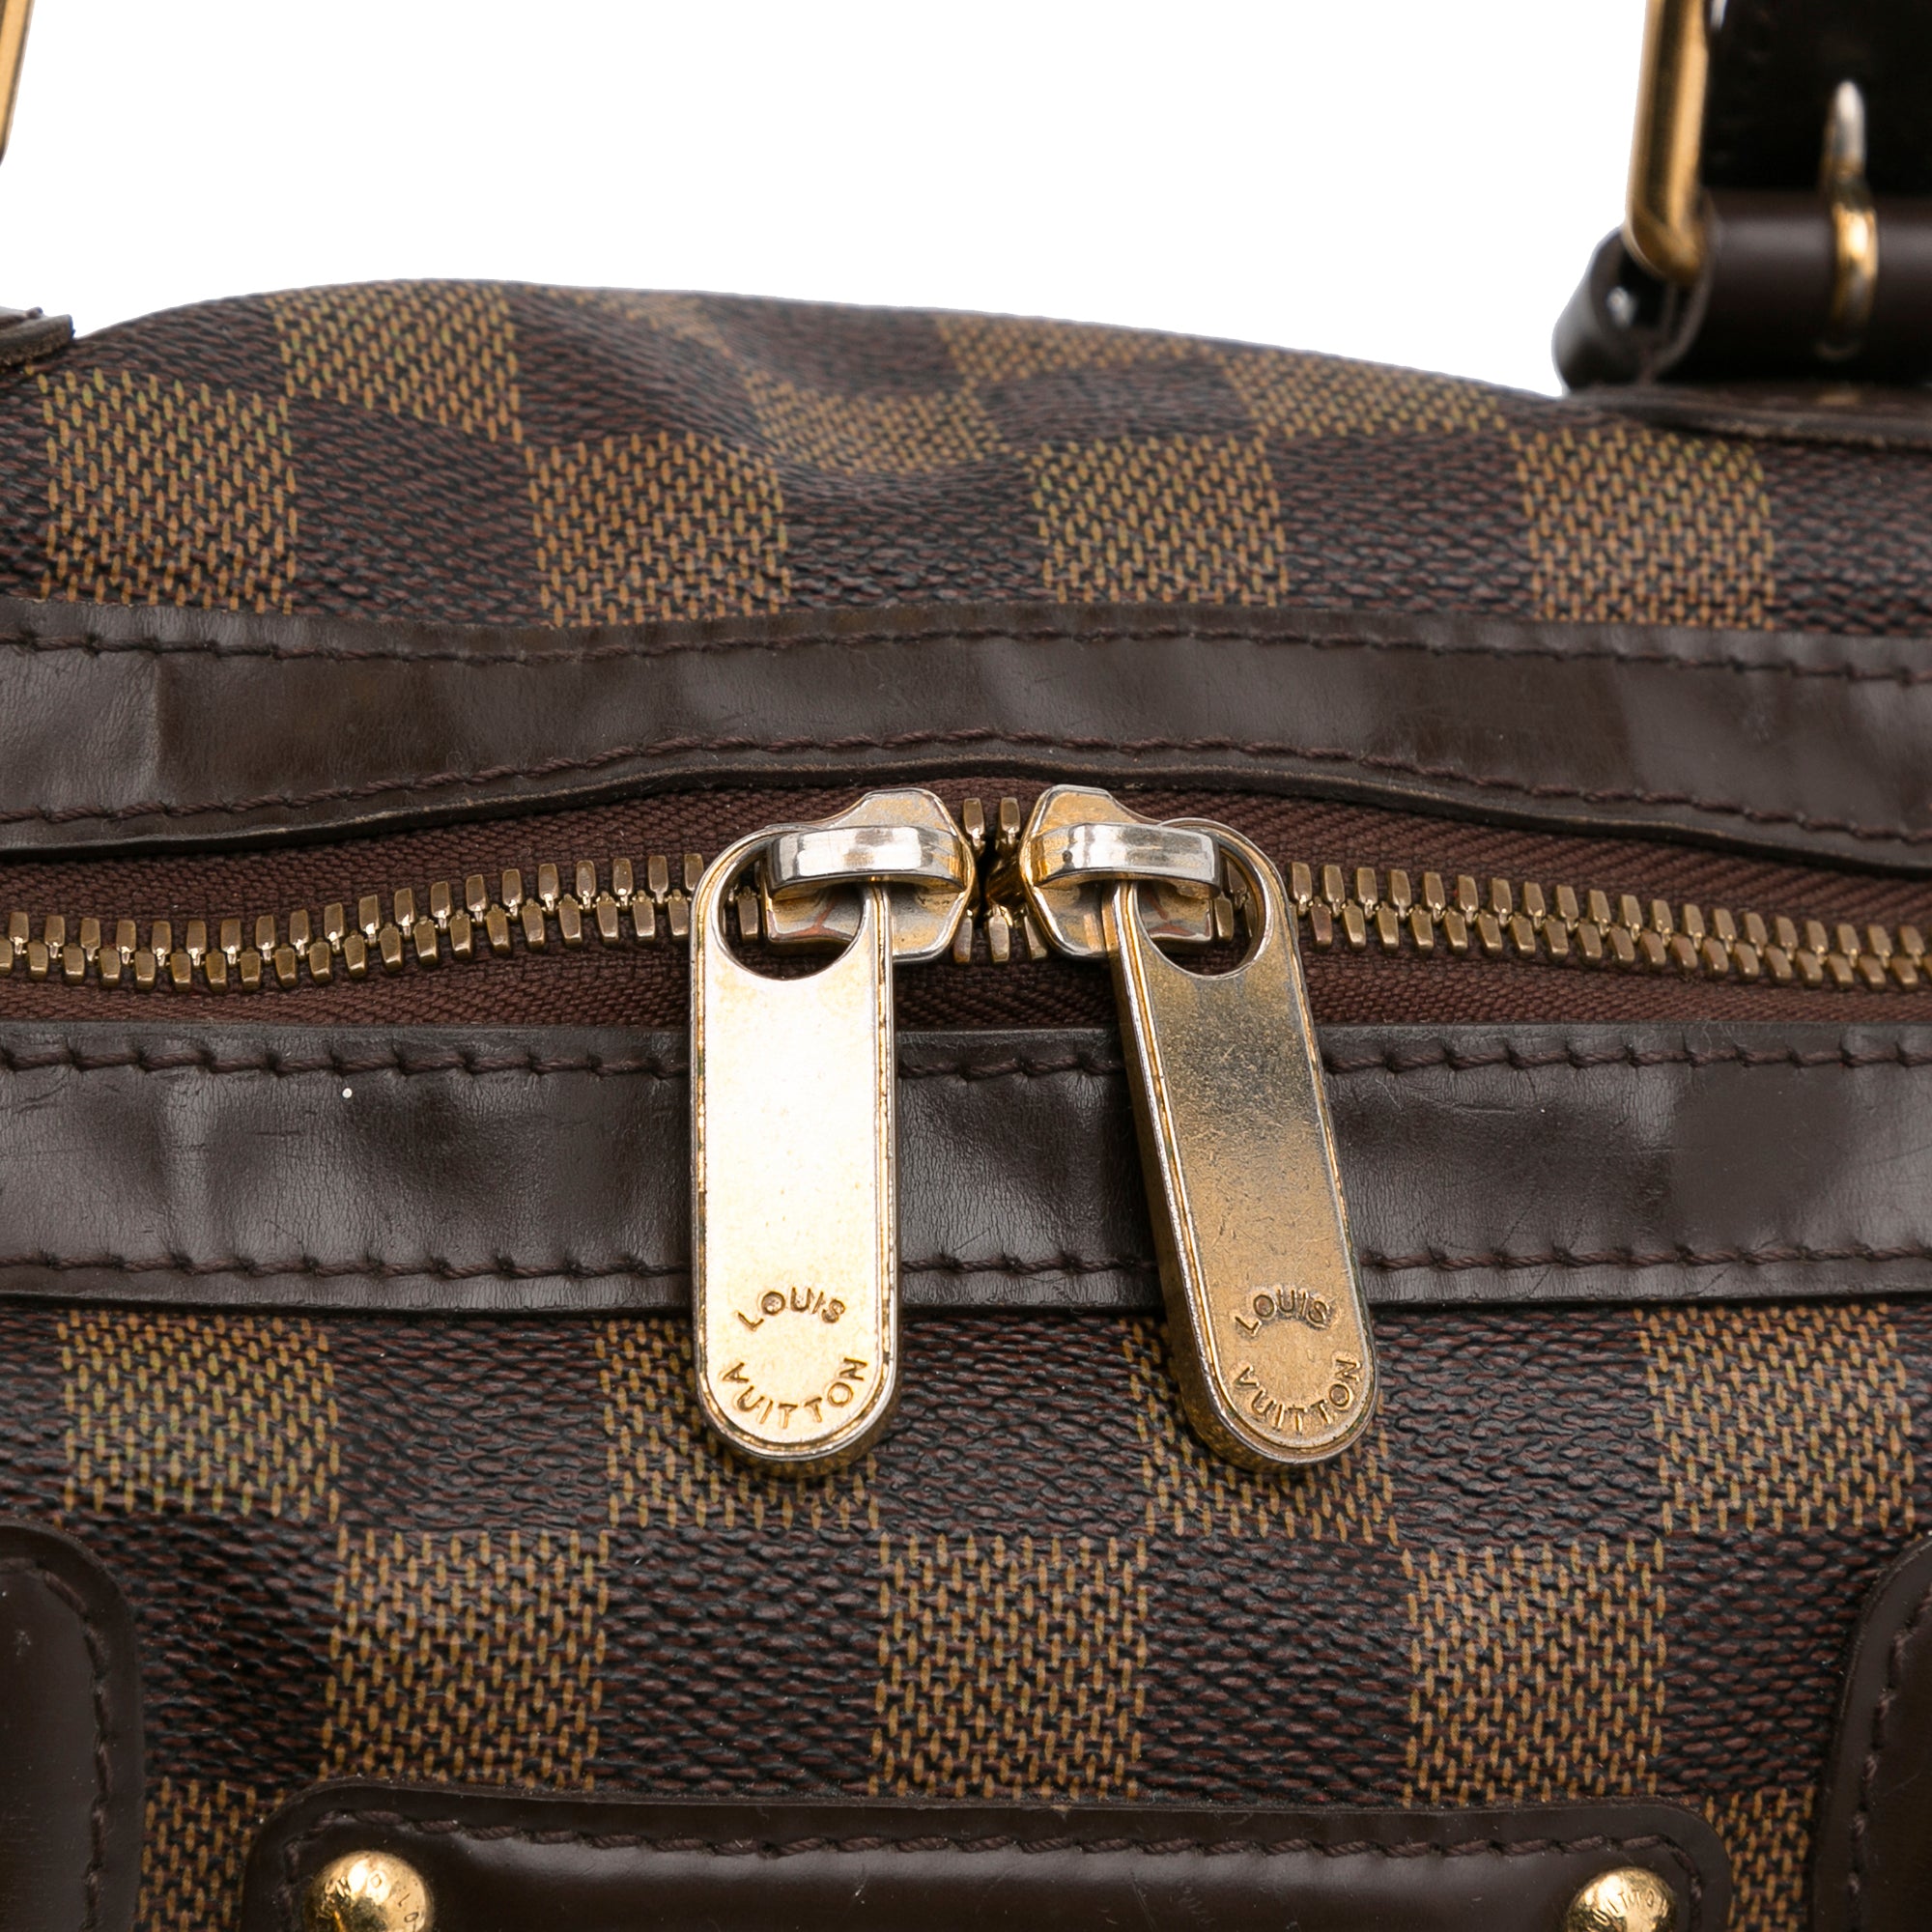 Louis Vuitton Berkeley Damier Azur Canvas Duffel Bag on SALE